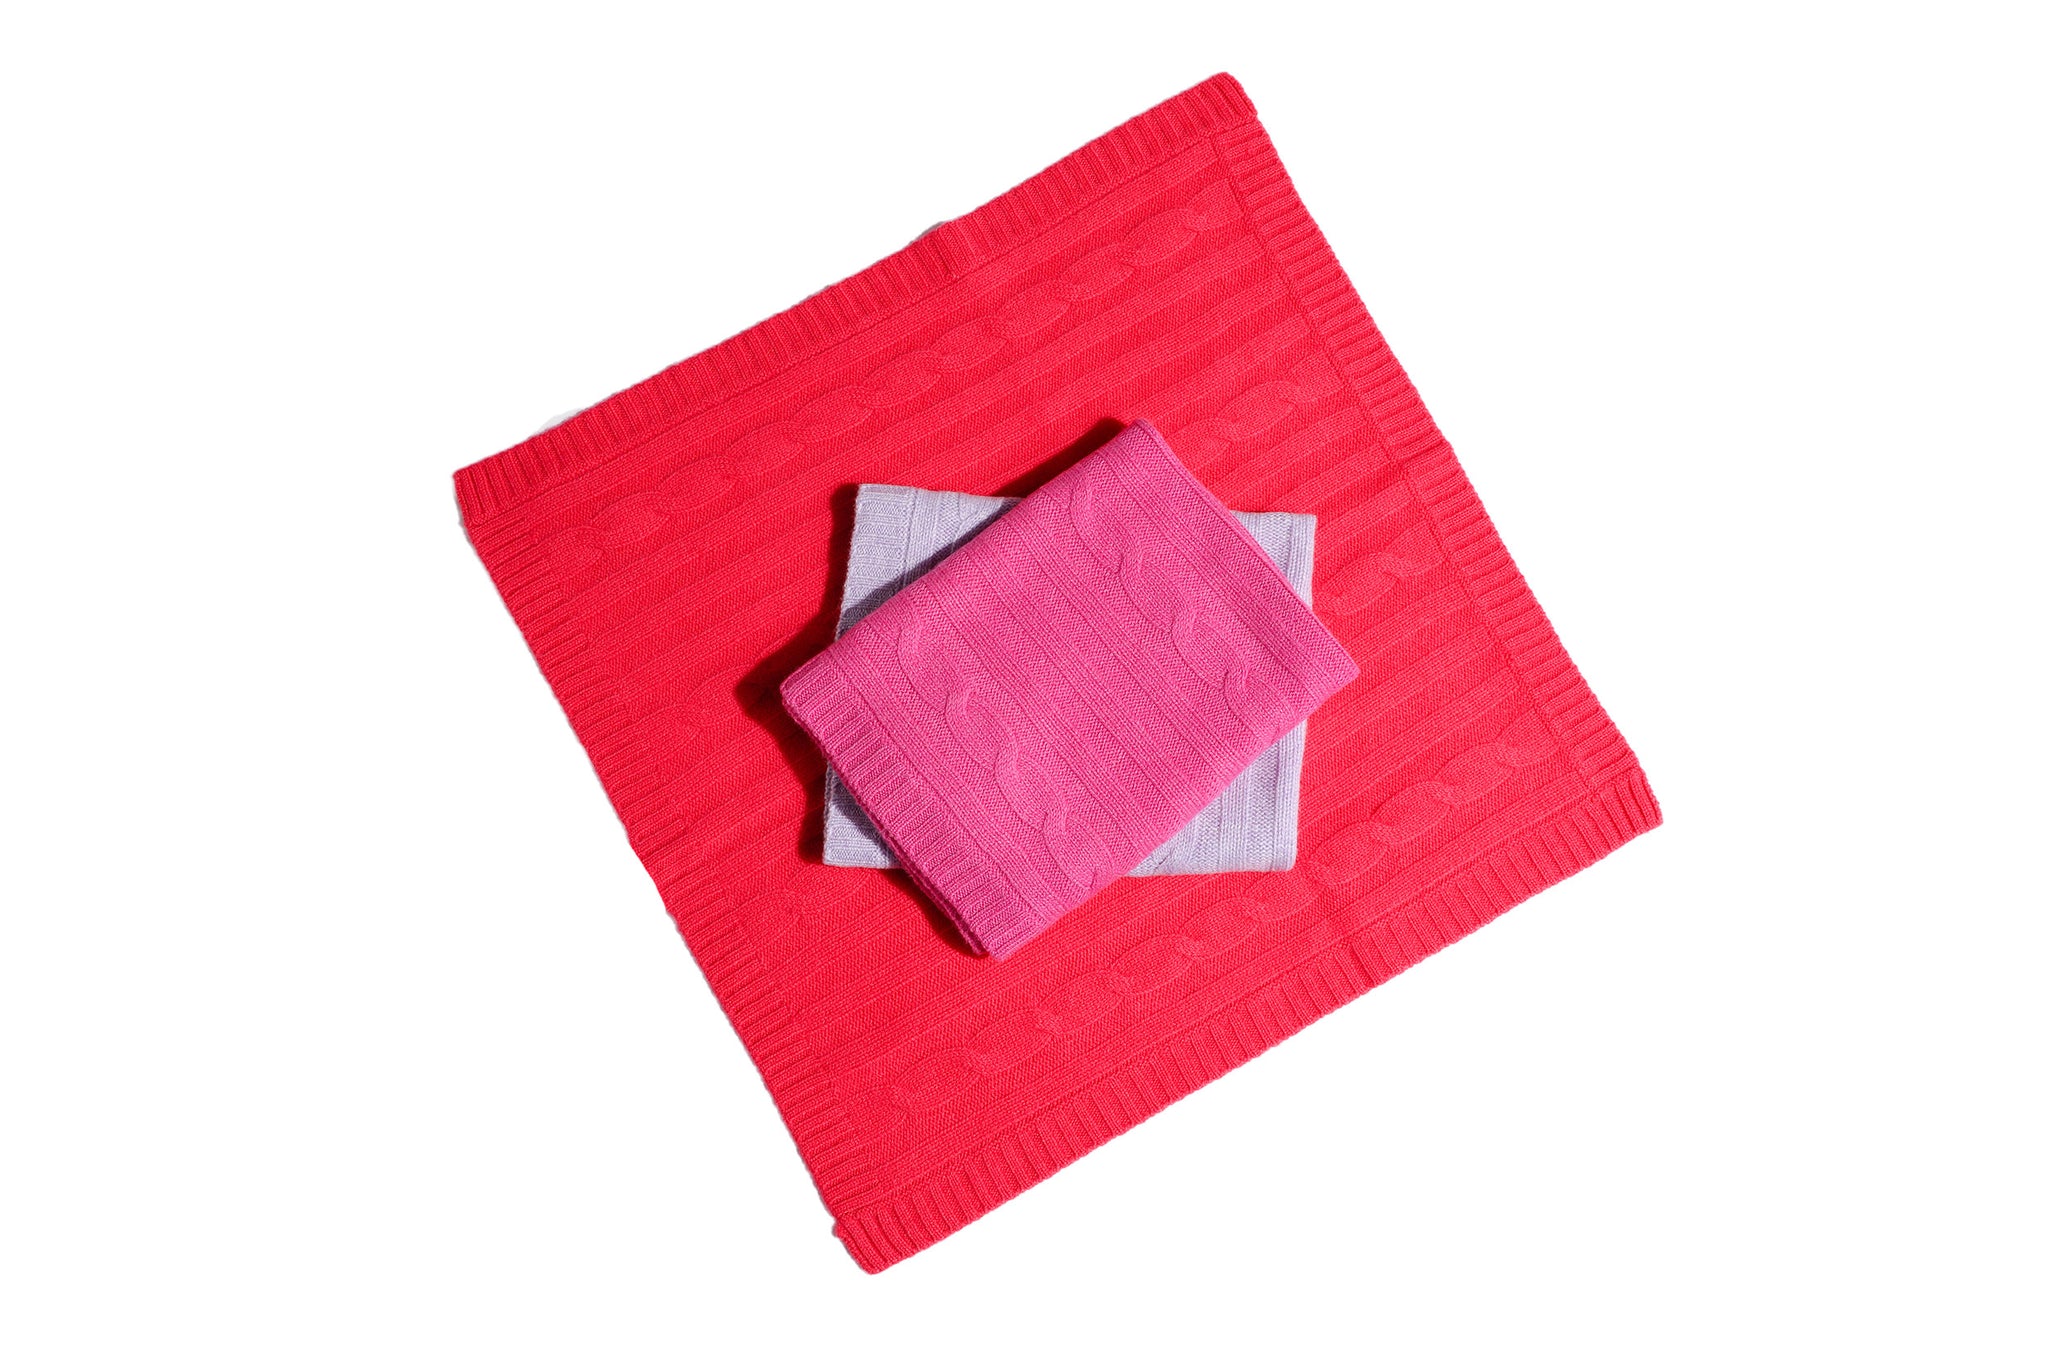 Cashmere Blanket - Orange, Purple, Lavender or Pink - Canine Styles - Dog Blanket - 4 Color Options